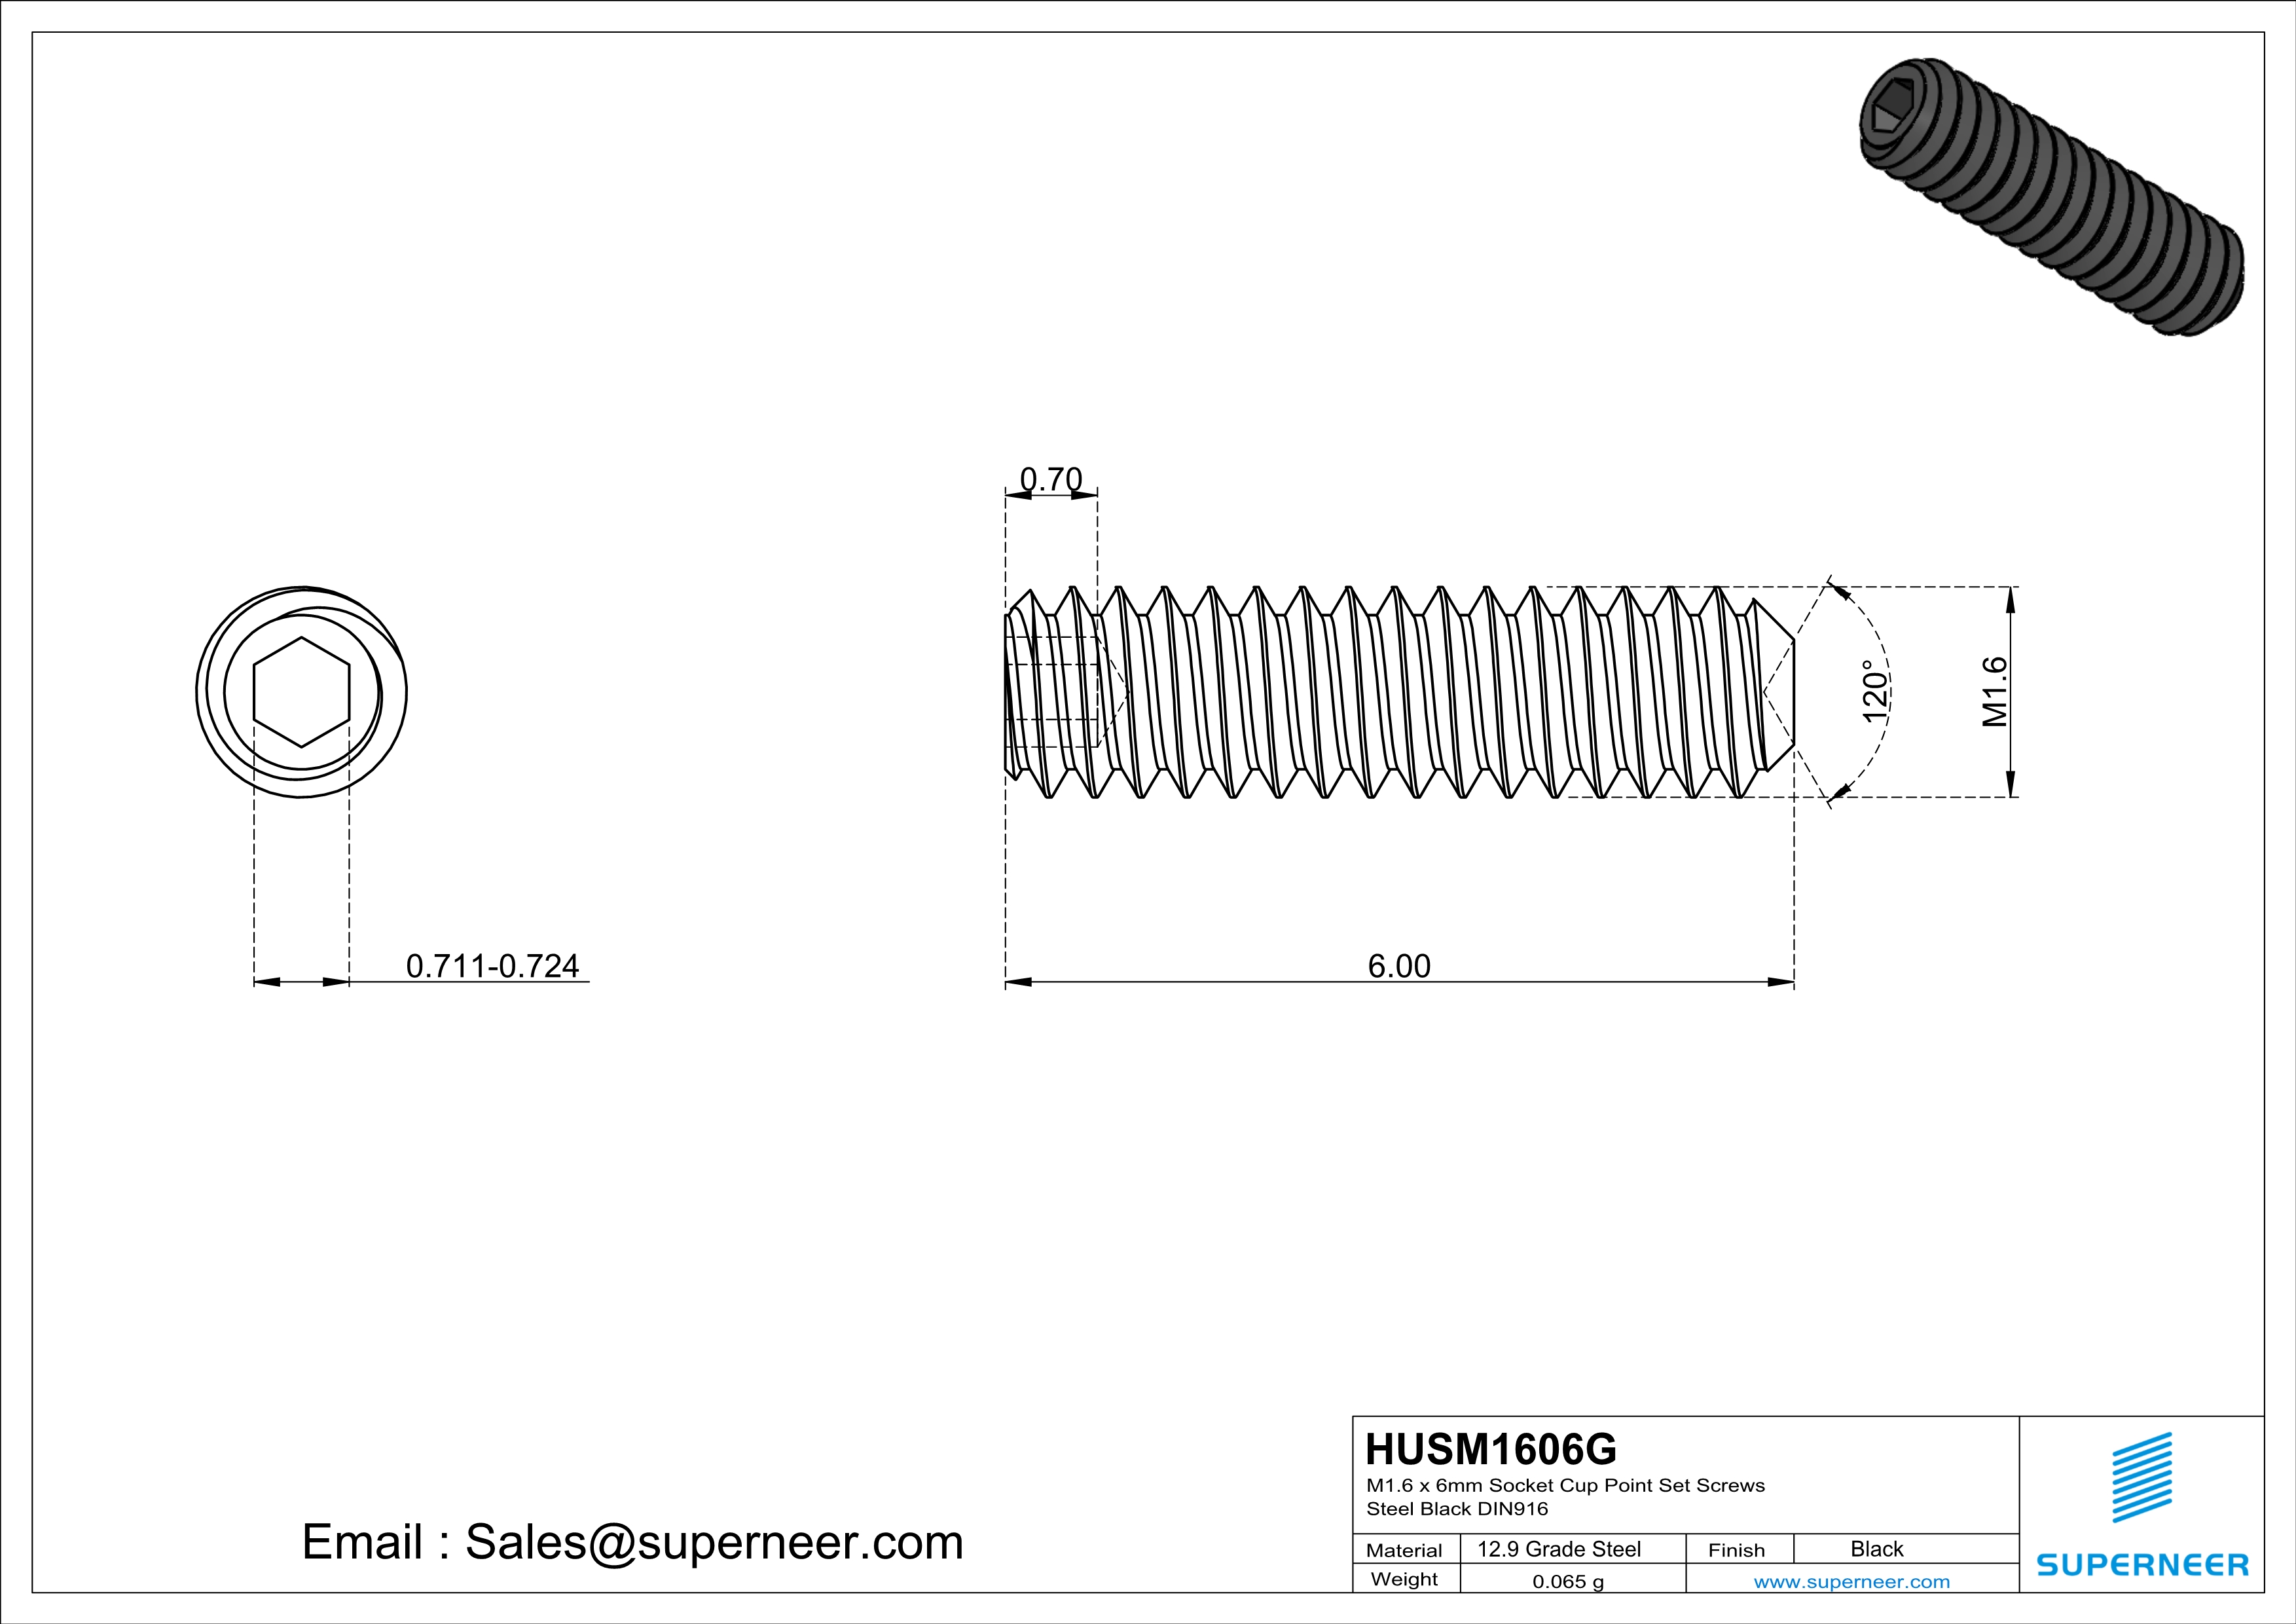 M1.6 x 6mm Socket Cup Point Set Screws 12.9 Carbon Steel Black DIN916